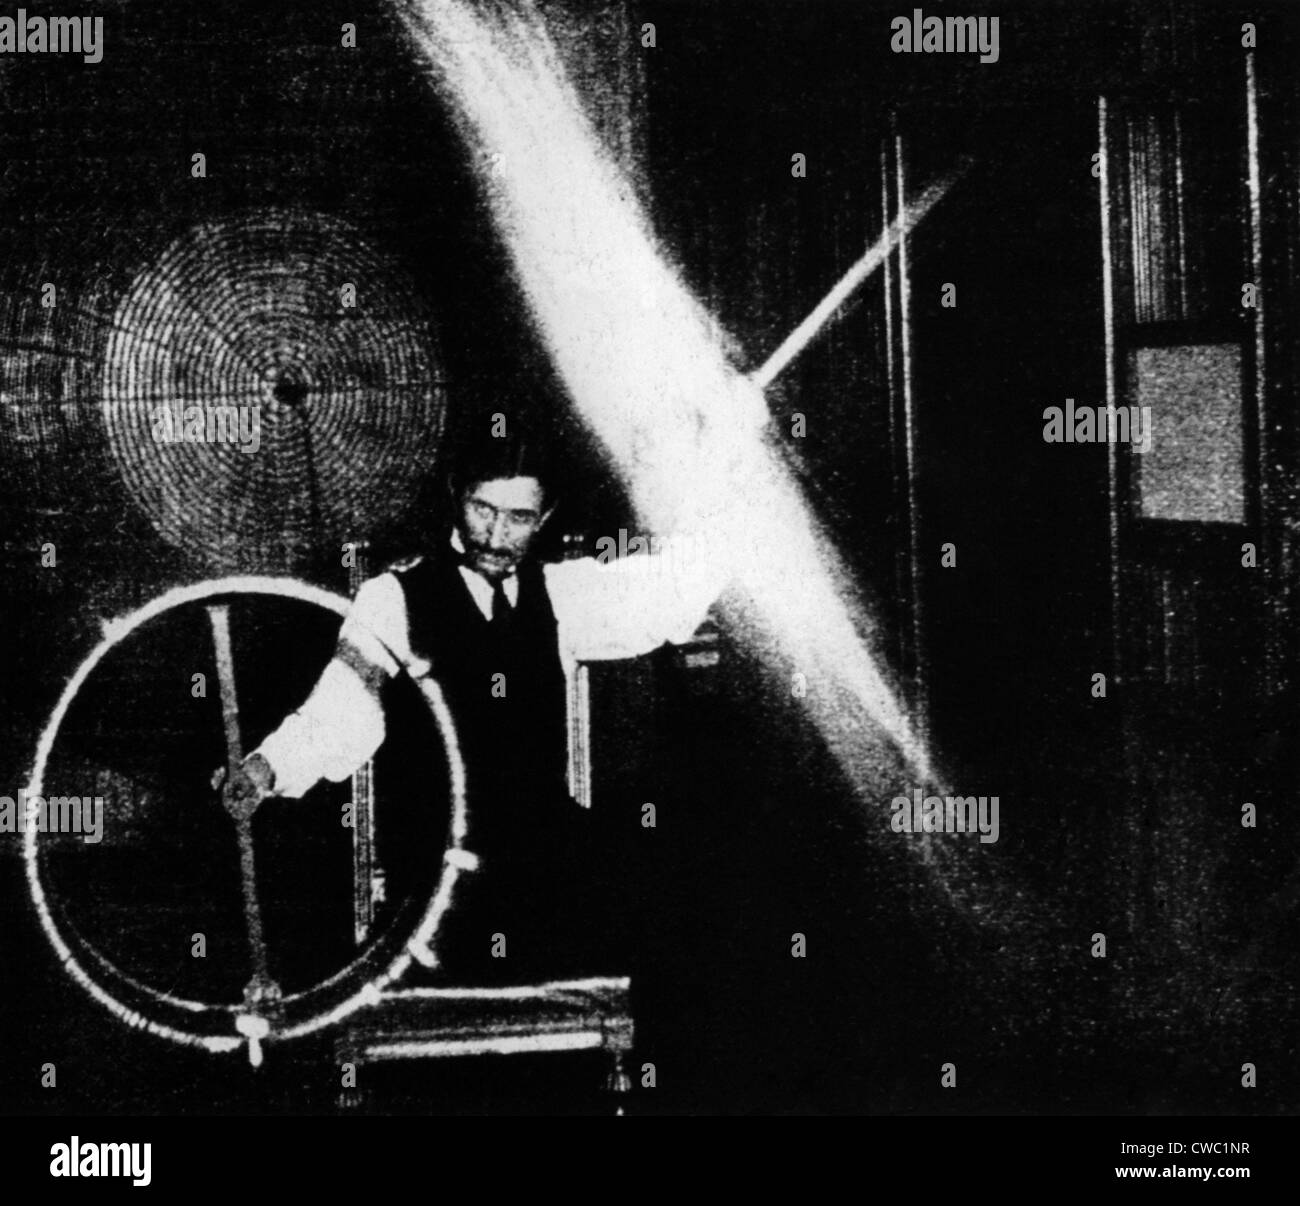 Nikola Tesla 1856-1943 durchgeführt spektakuläre Demonstrationen von Elektrizität. Dieses Bild im Jahre 1899 in ELECTRICAL REVIEW veröffentlicht. Stockfoto